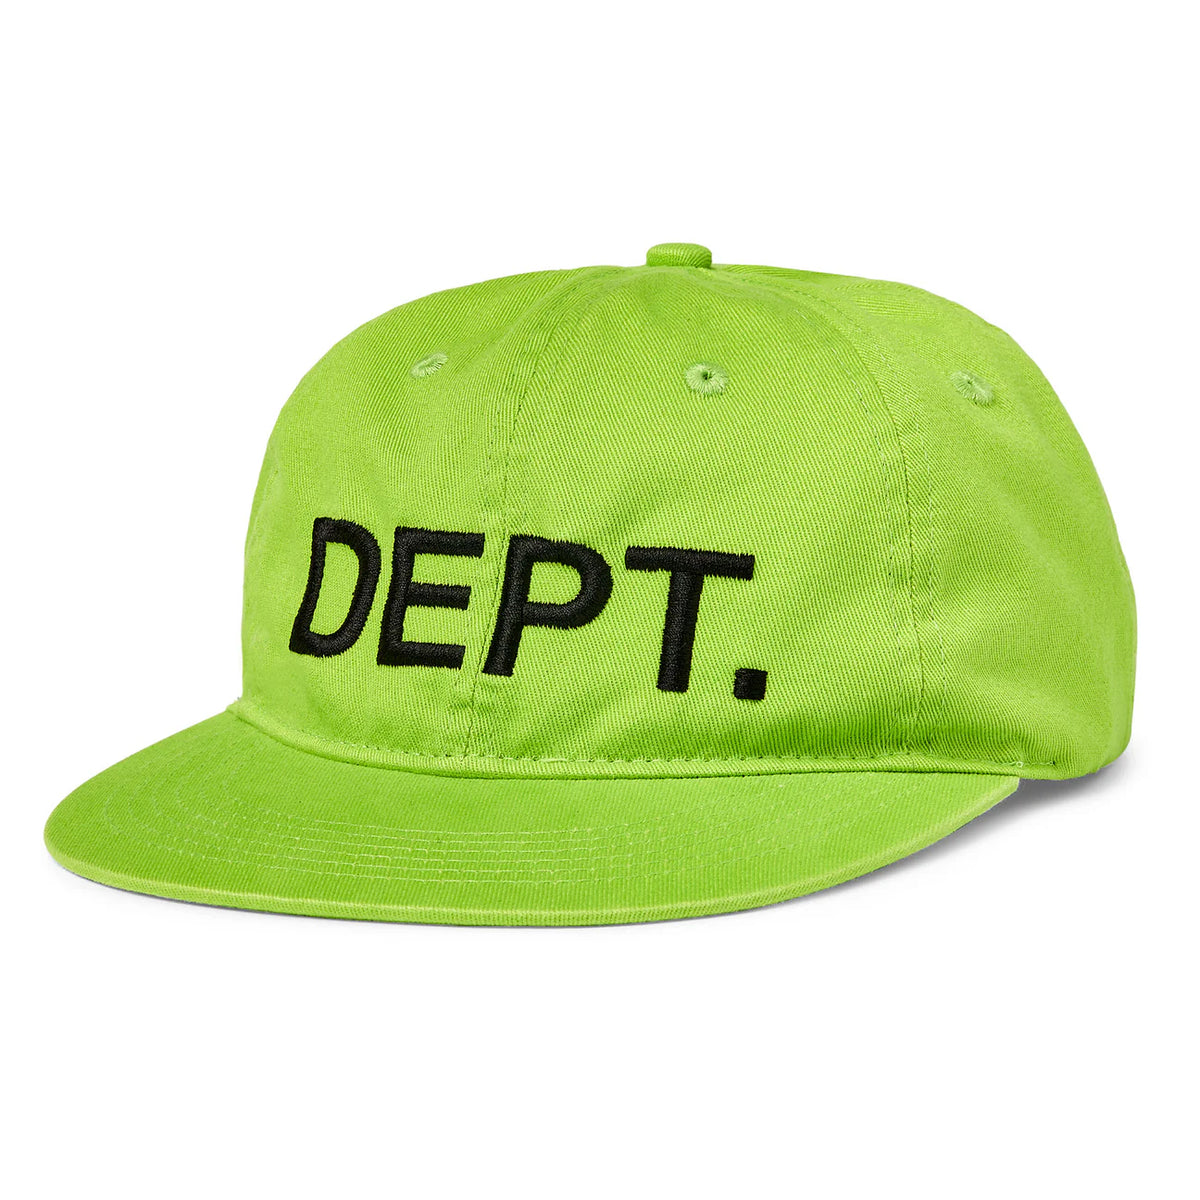 Gallery Dept. "Dept" Hat Flo Green